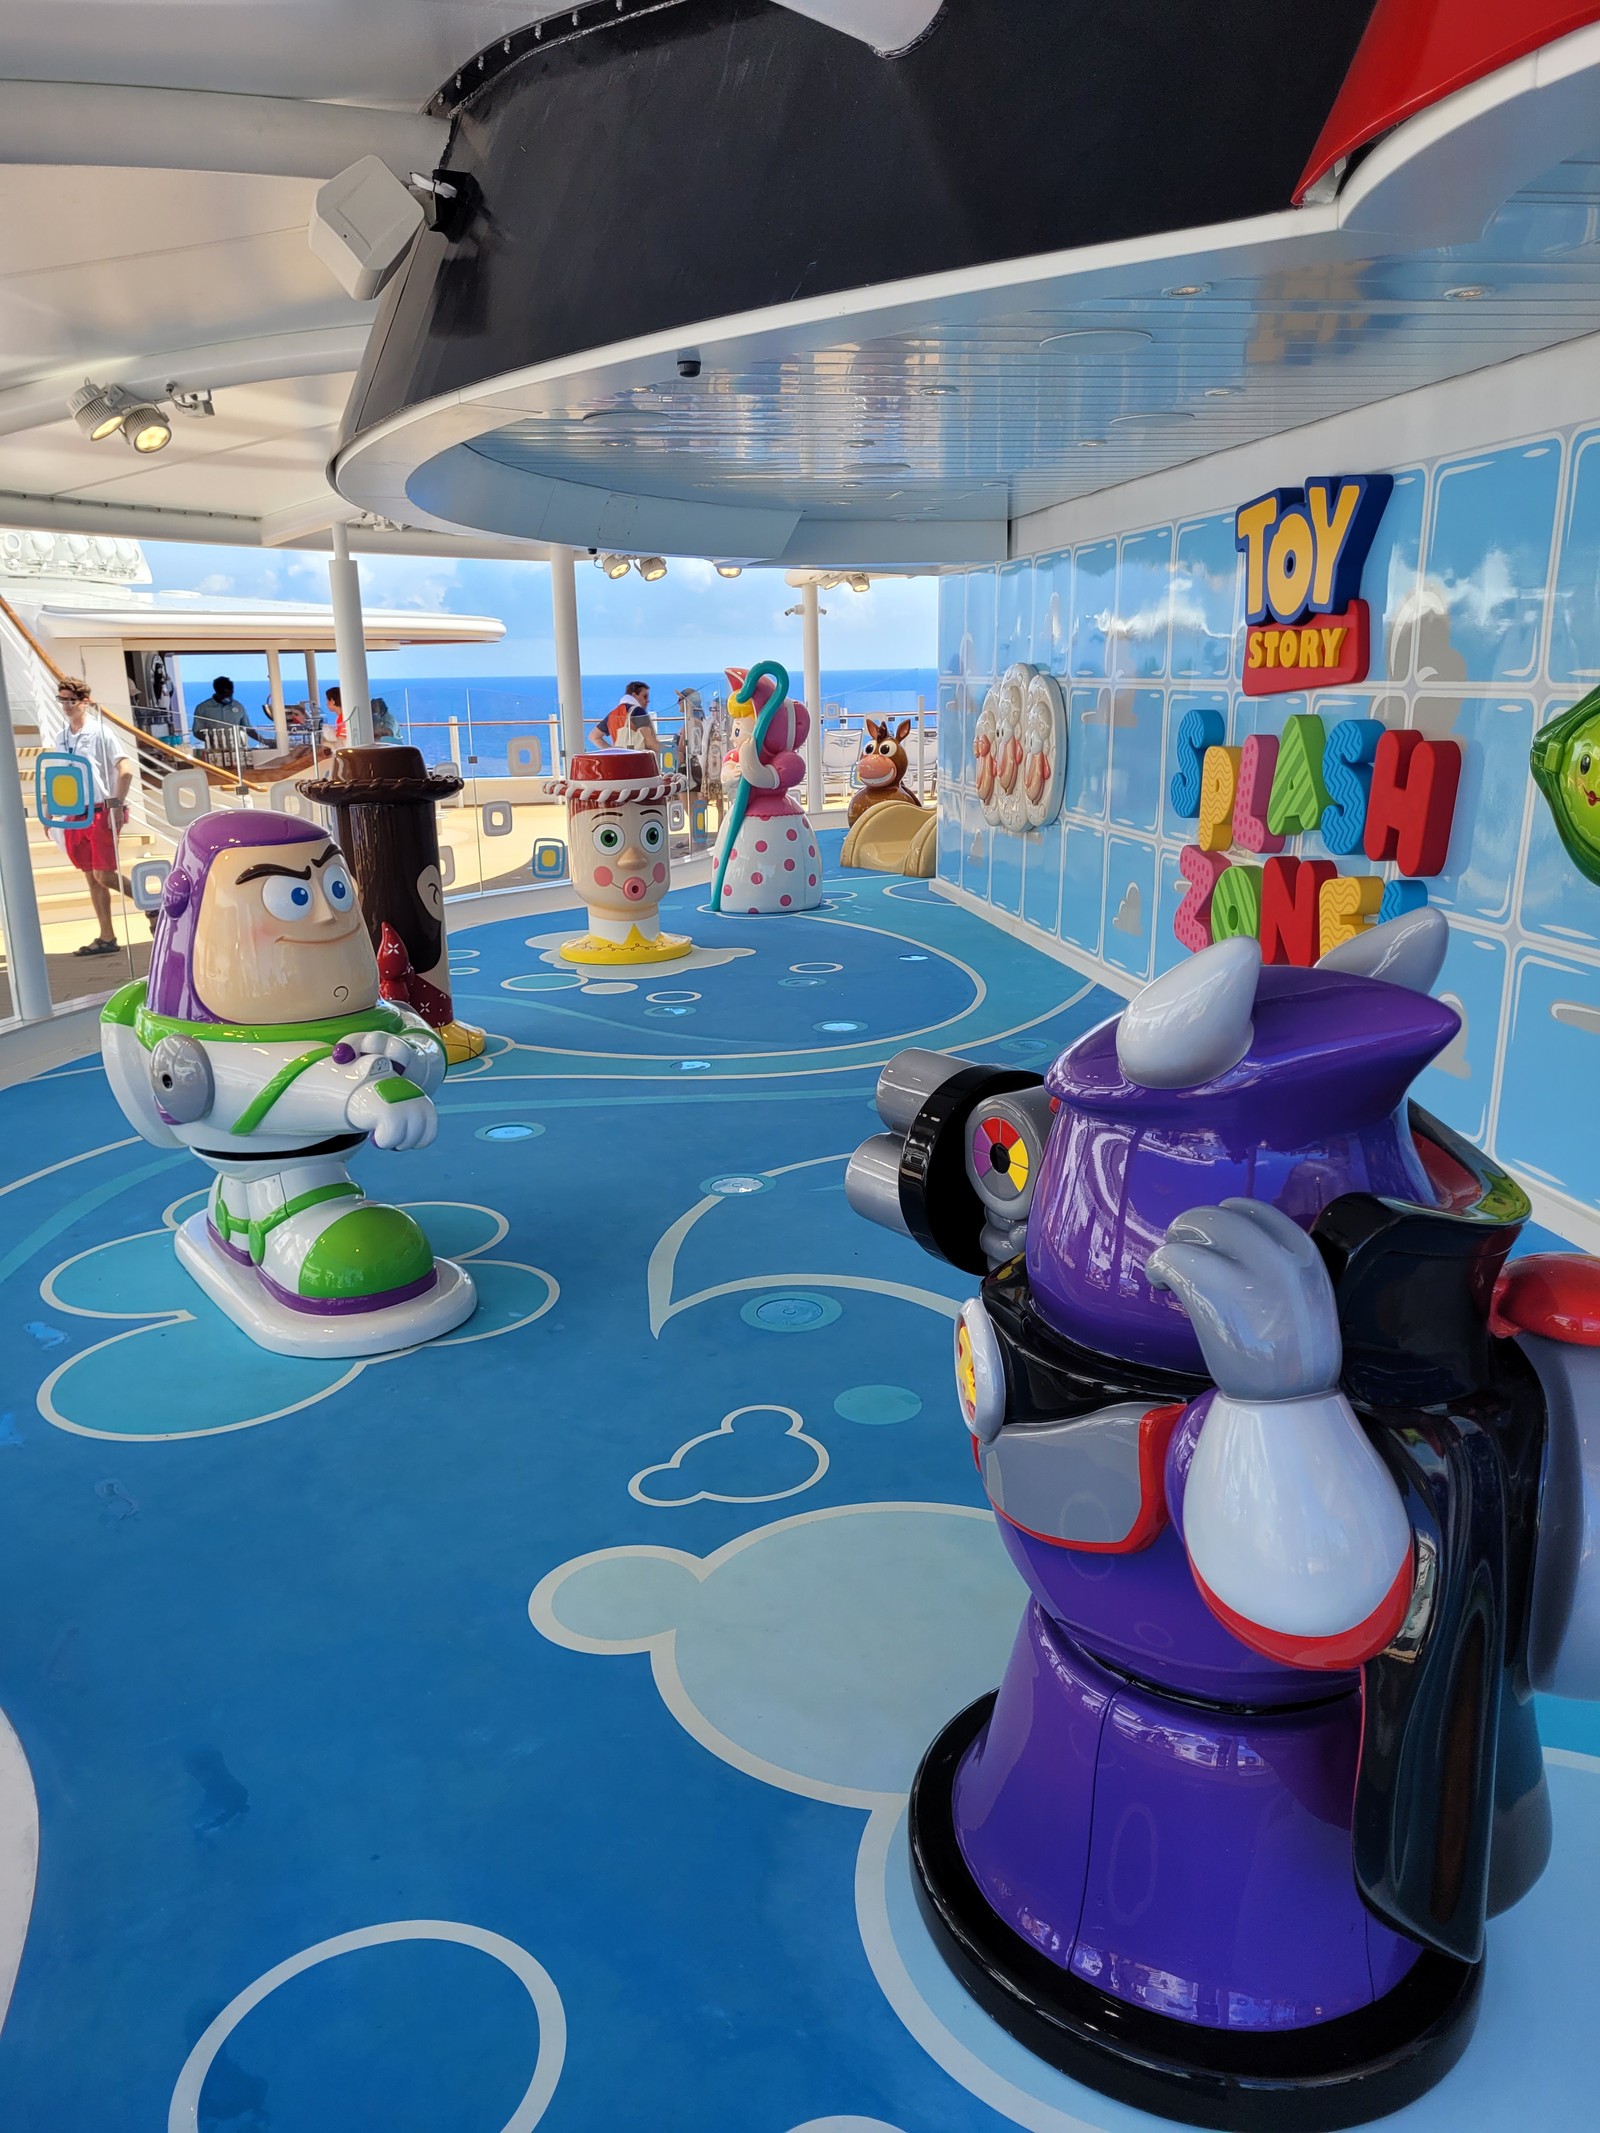 No complexo aquático há ainda um playground molhado para crianças pequenas, inspirado em 'Toy Story'